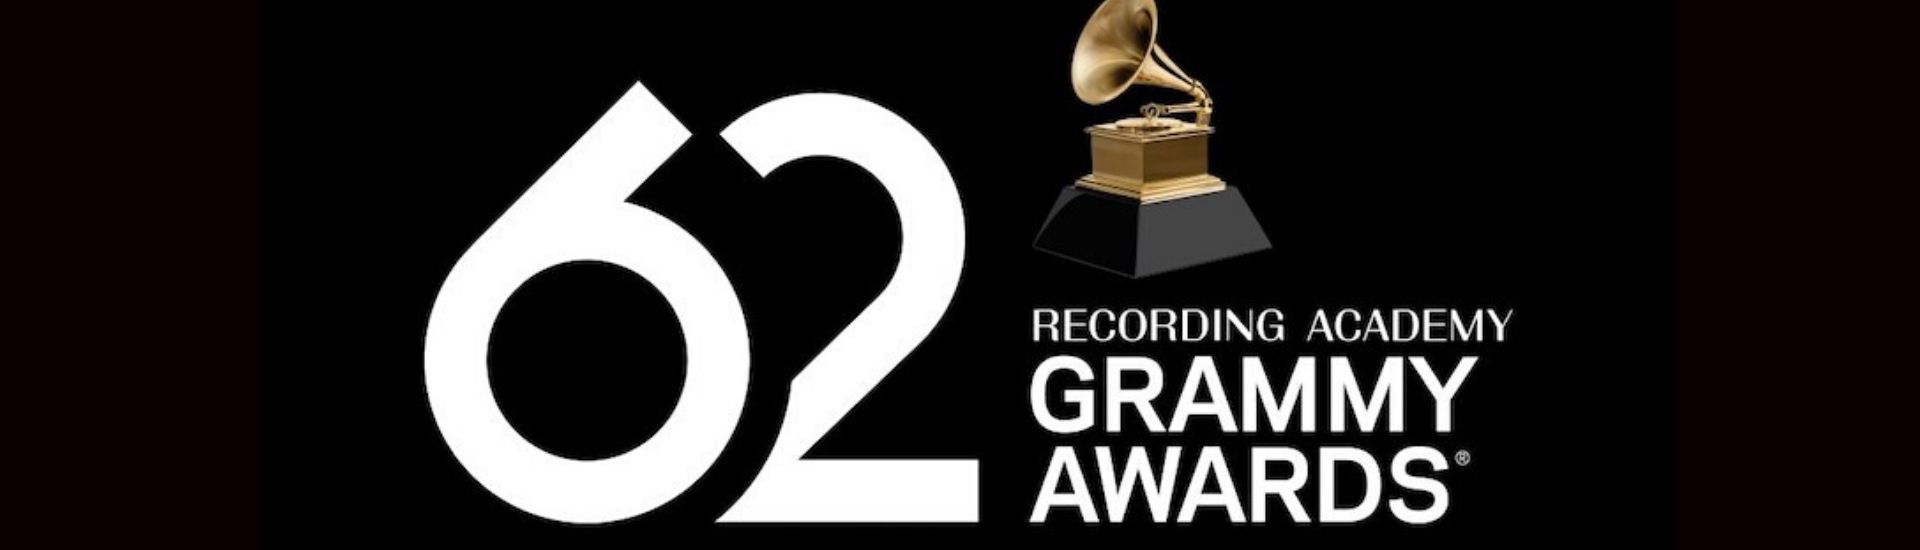 Grammy : Naomi Campbell demande l’inclusion d’une catégorie “afrobeat”, mon avis